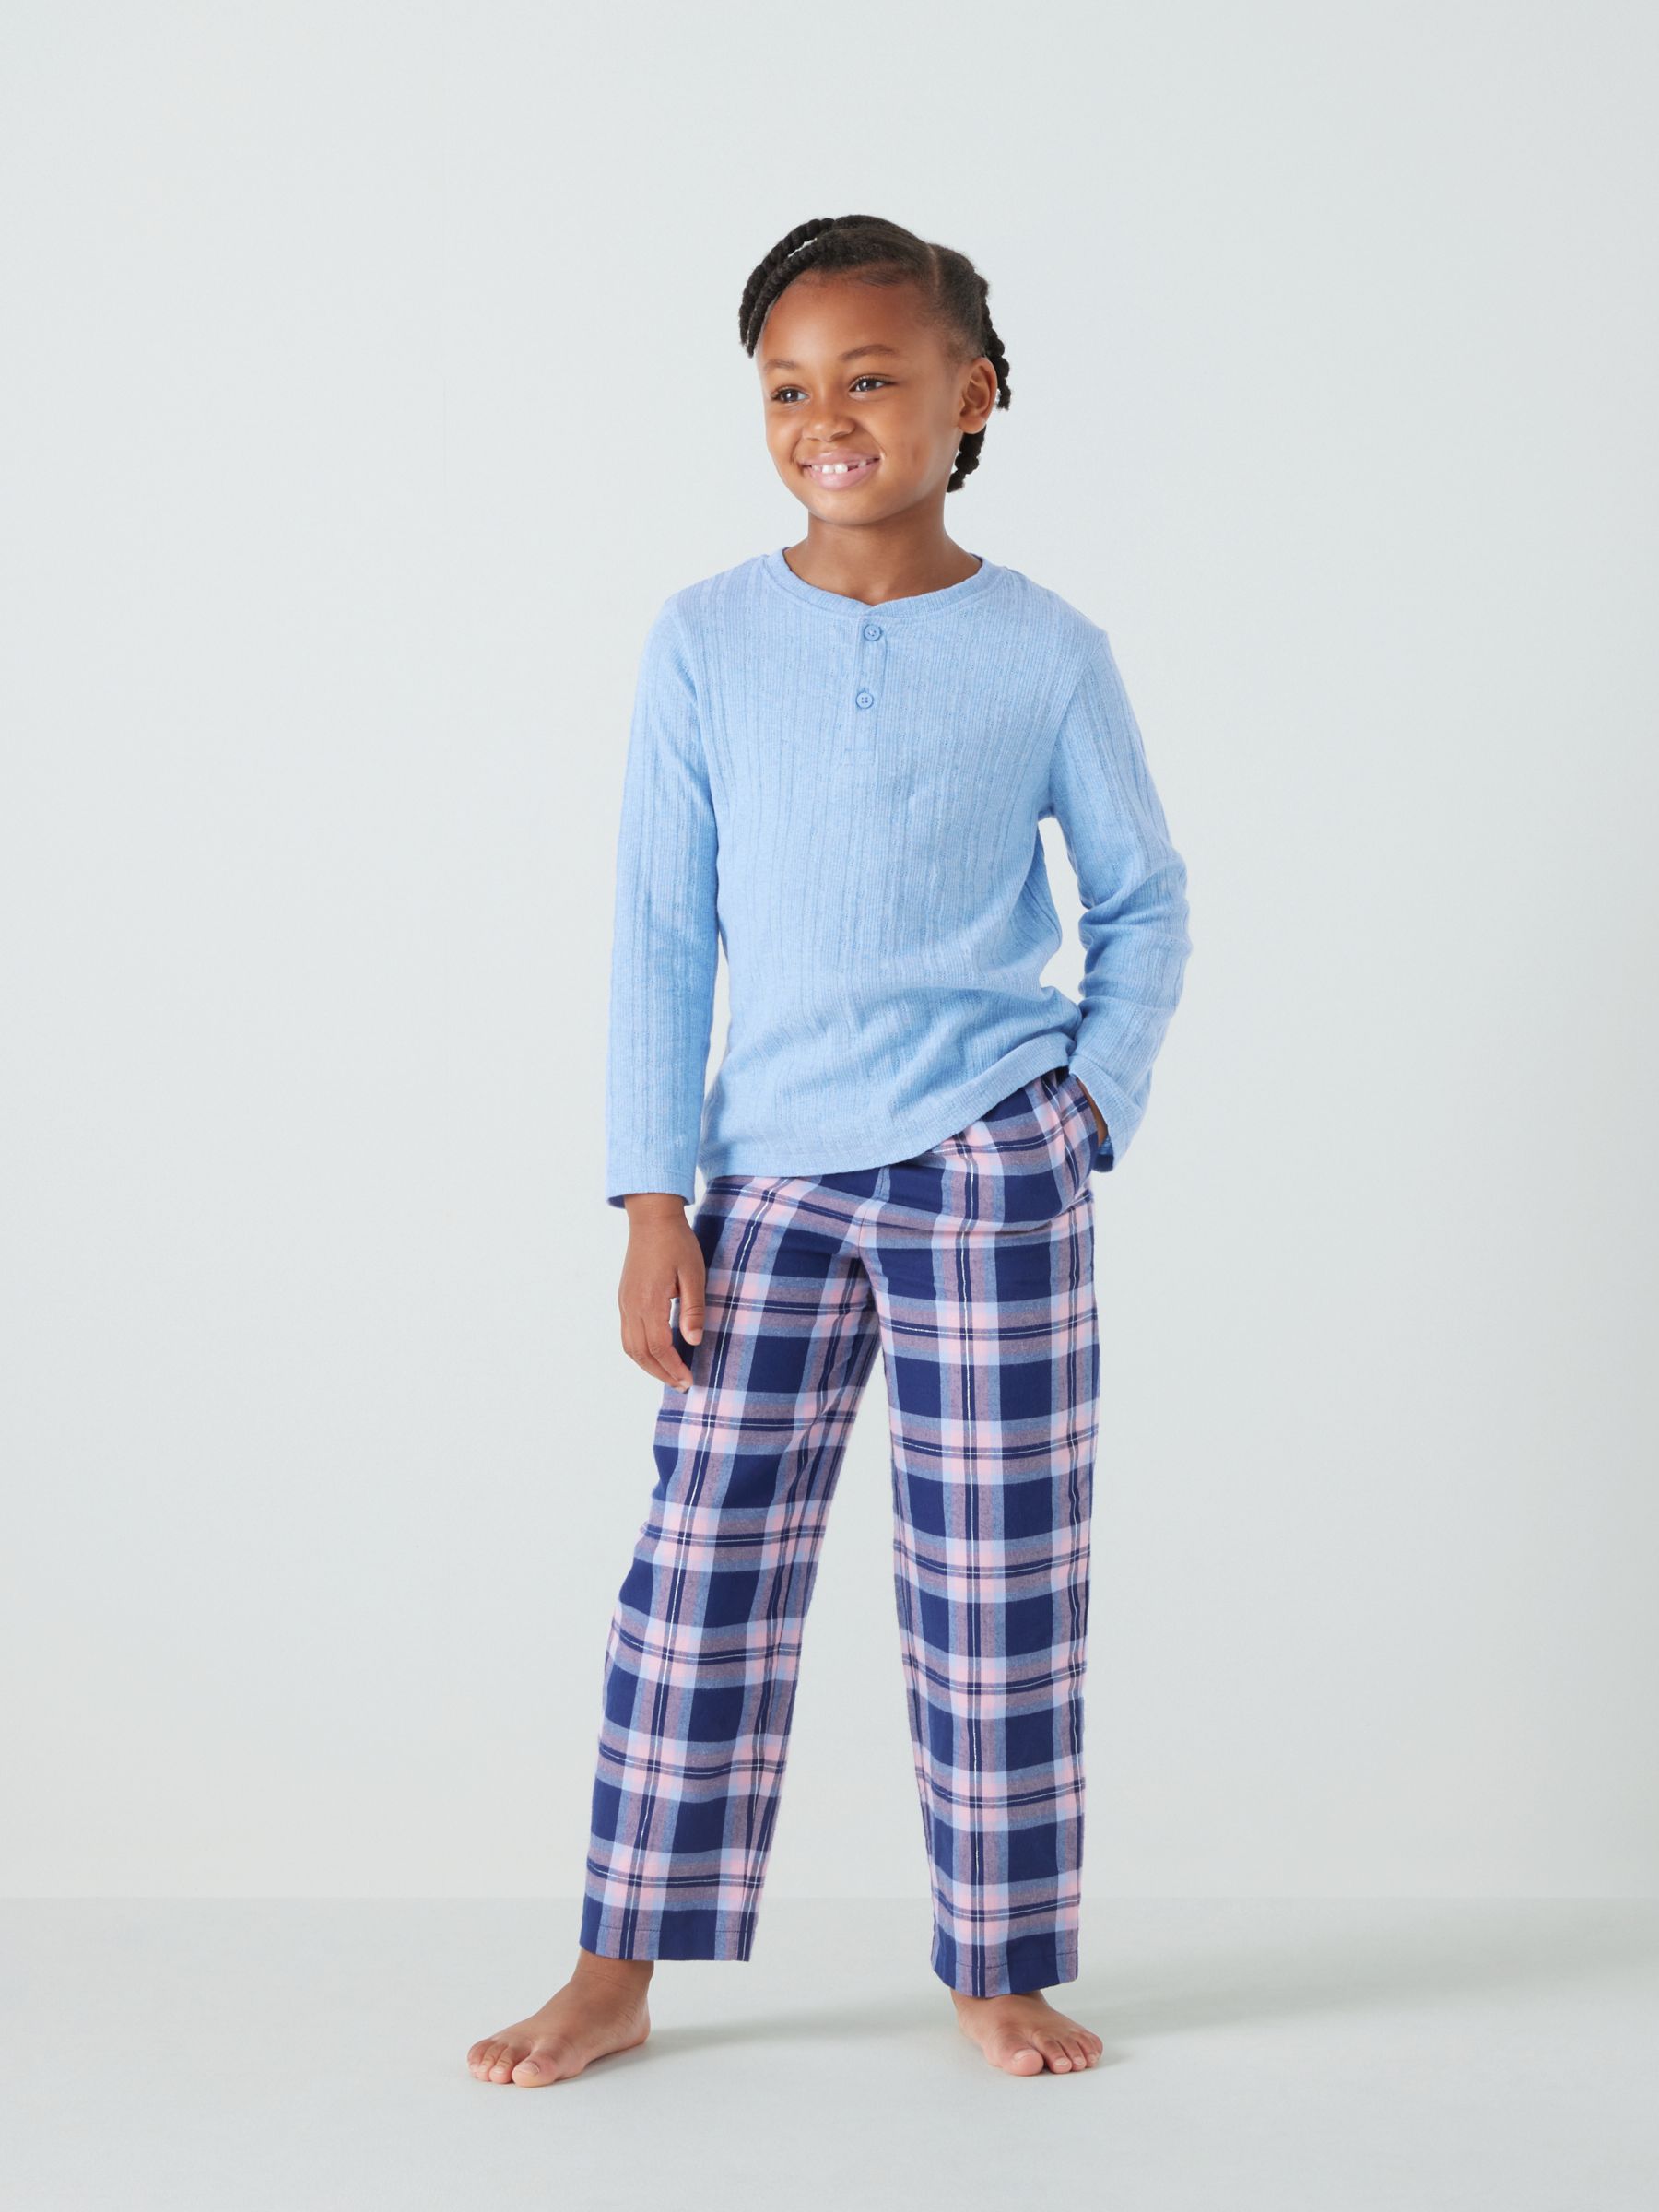 John Lewis Kids' Pointelle & Brushed Cotton Pyjama Set, Blue/Multi, 5 years